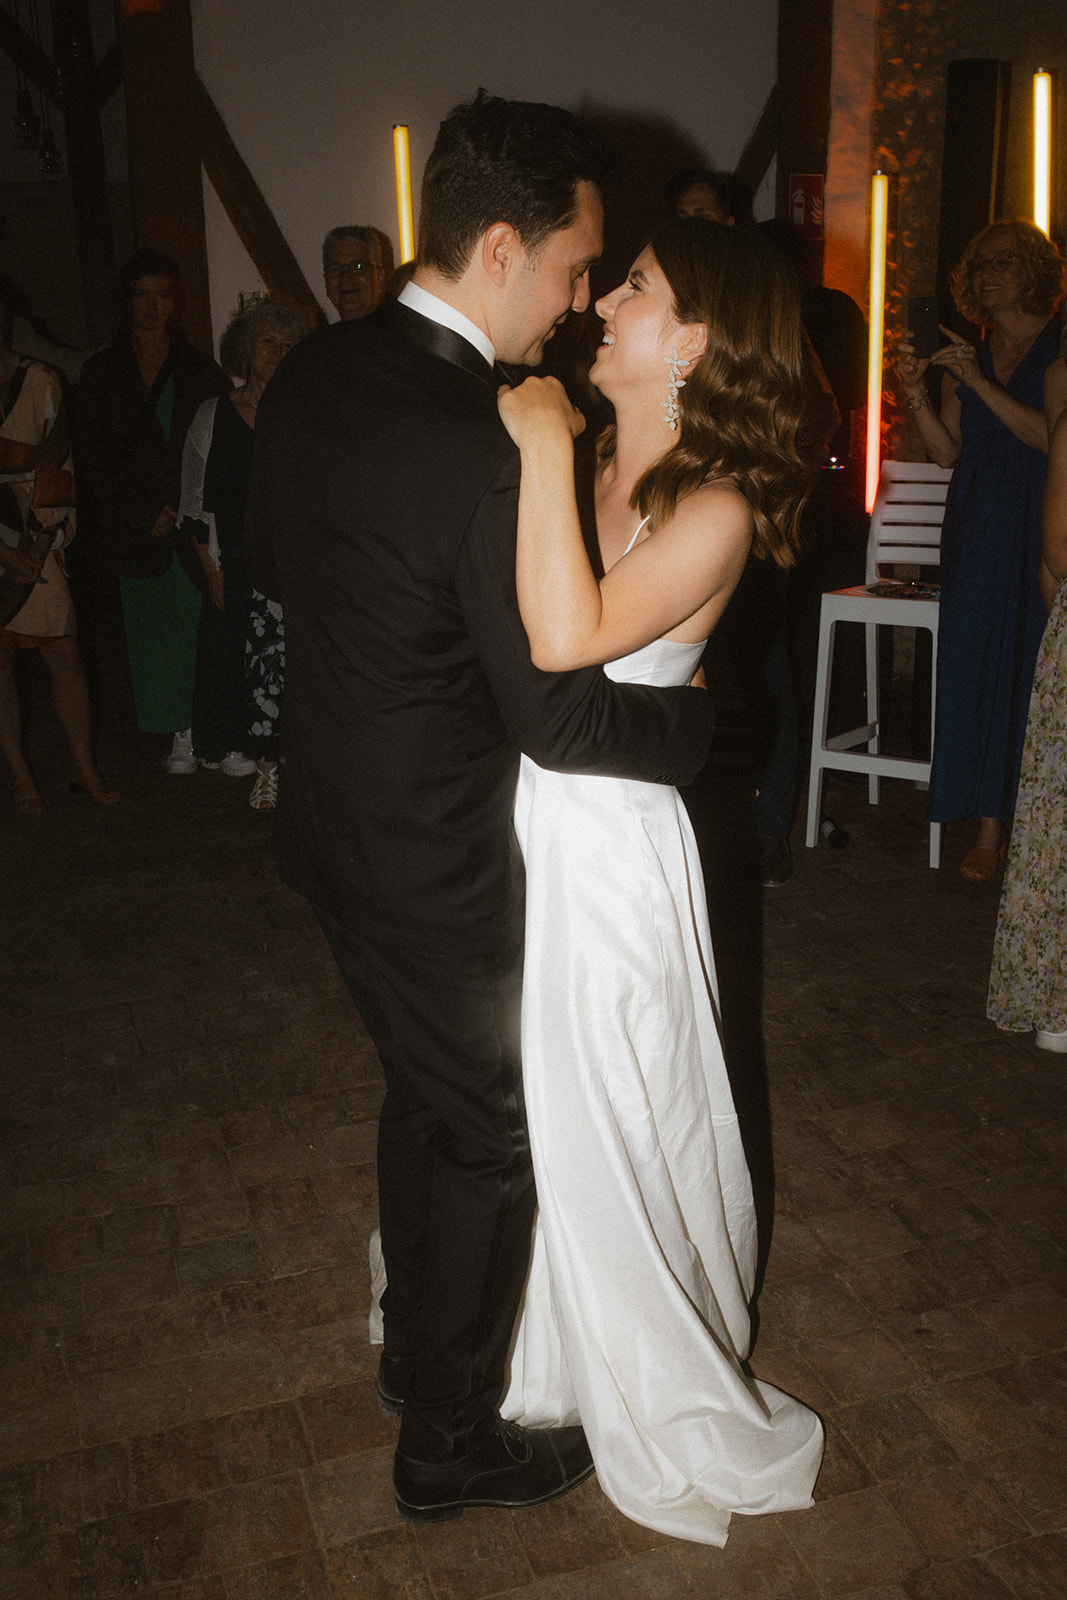 Brautpaar küsst sich umarmend auf der Tanzfläche